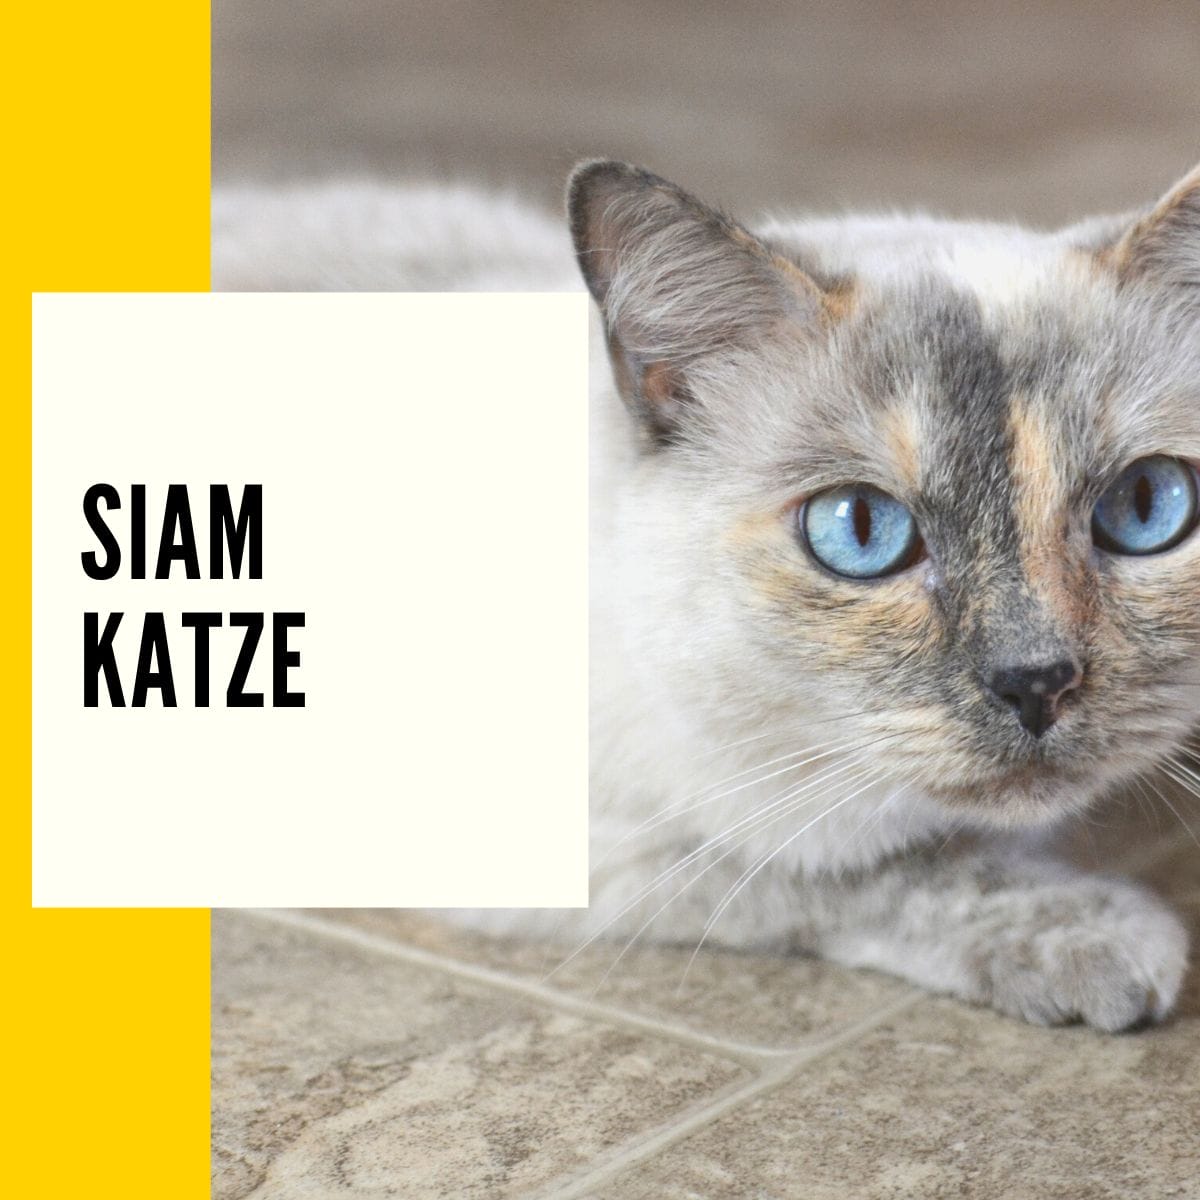 Siamkatzen - Auf dieser Seite findet ihr eine Beschreibung und ein Rassenportrait bzw. Steckbrief der beliebtesten Wohnungskatze in Deutschland.